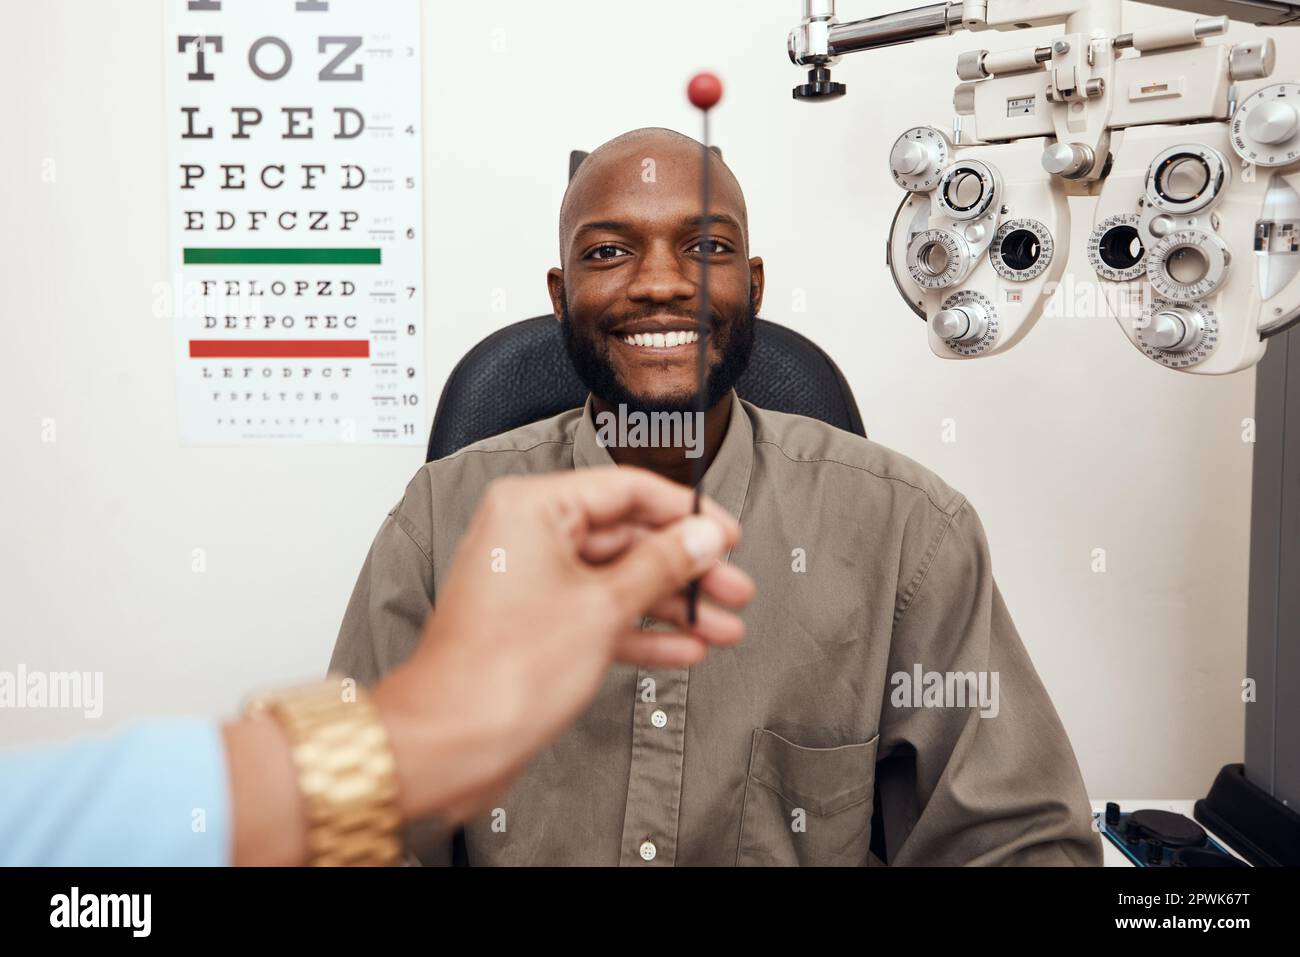 Uomo nero che ha i suoi occhi testati ad un optometrista. Sorridente afroamericano consulenza maschile con un opthamologist, avendo una visione e cura degli occhi controllo Foto Stock